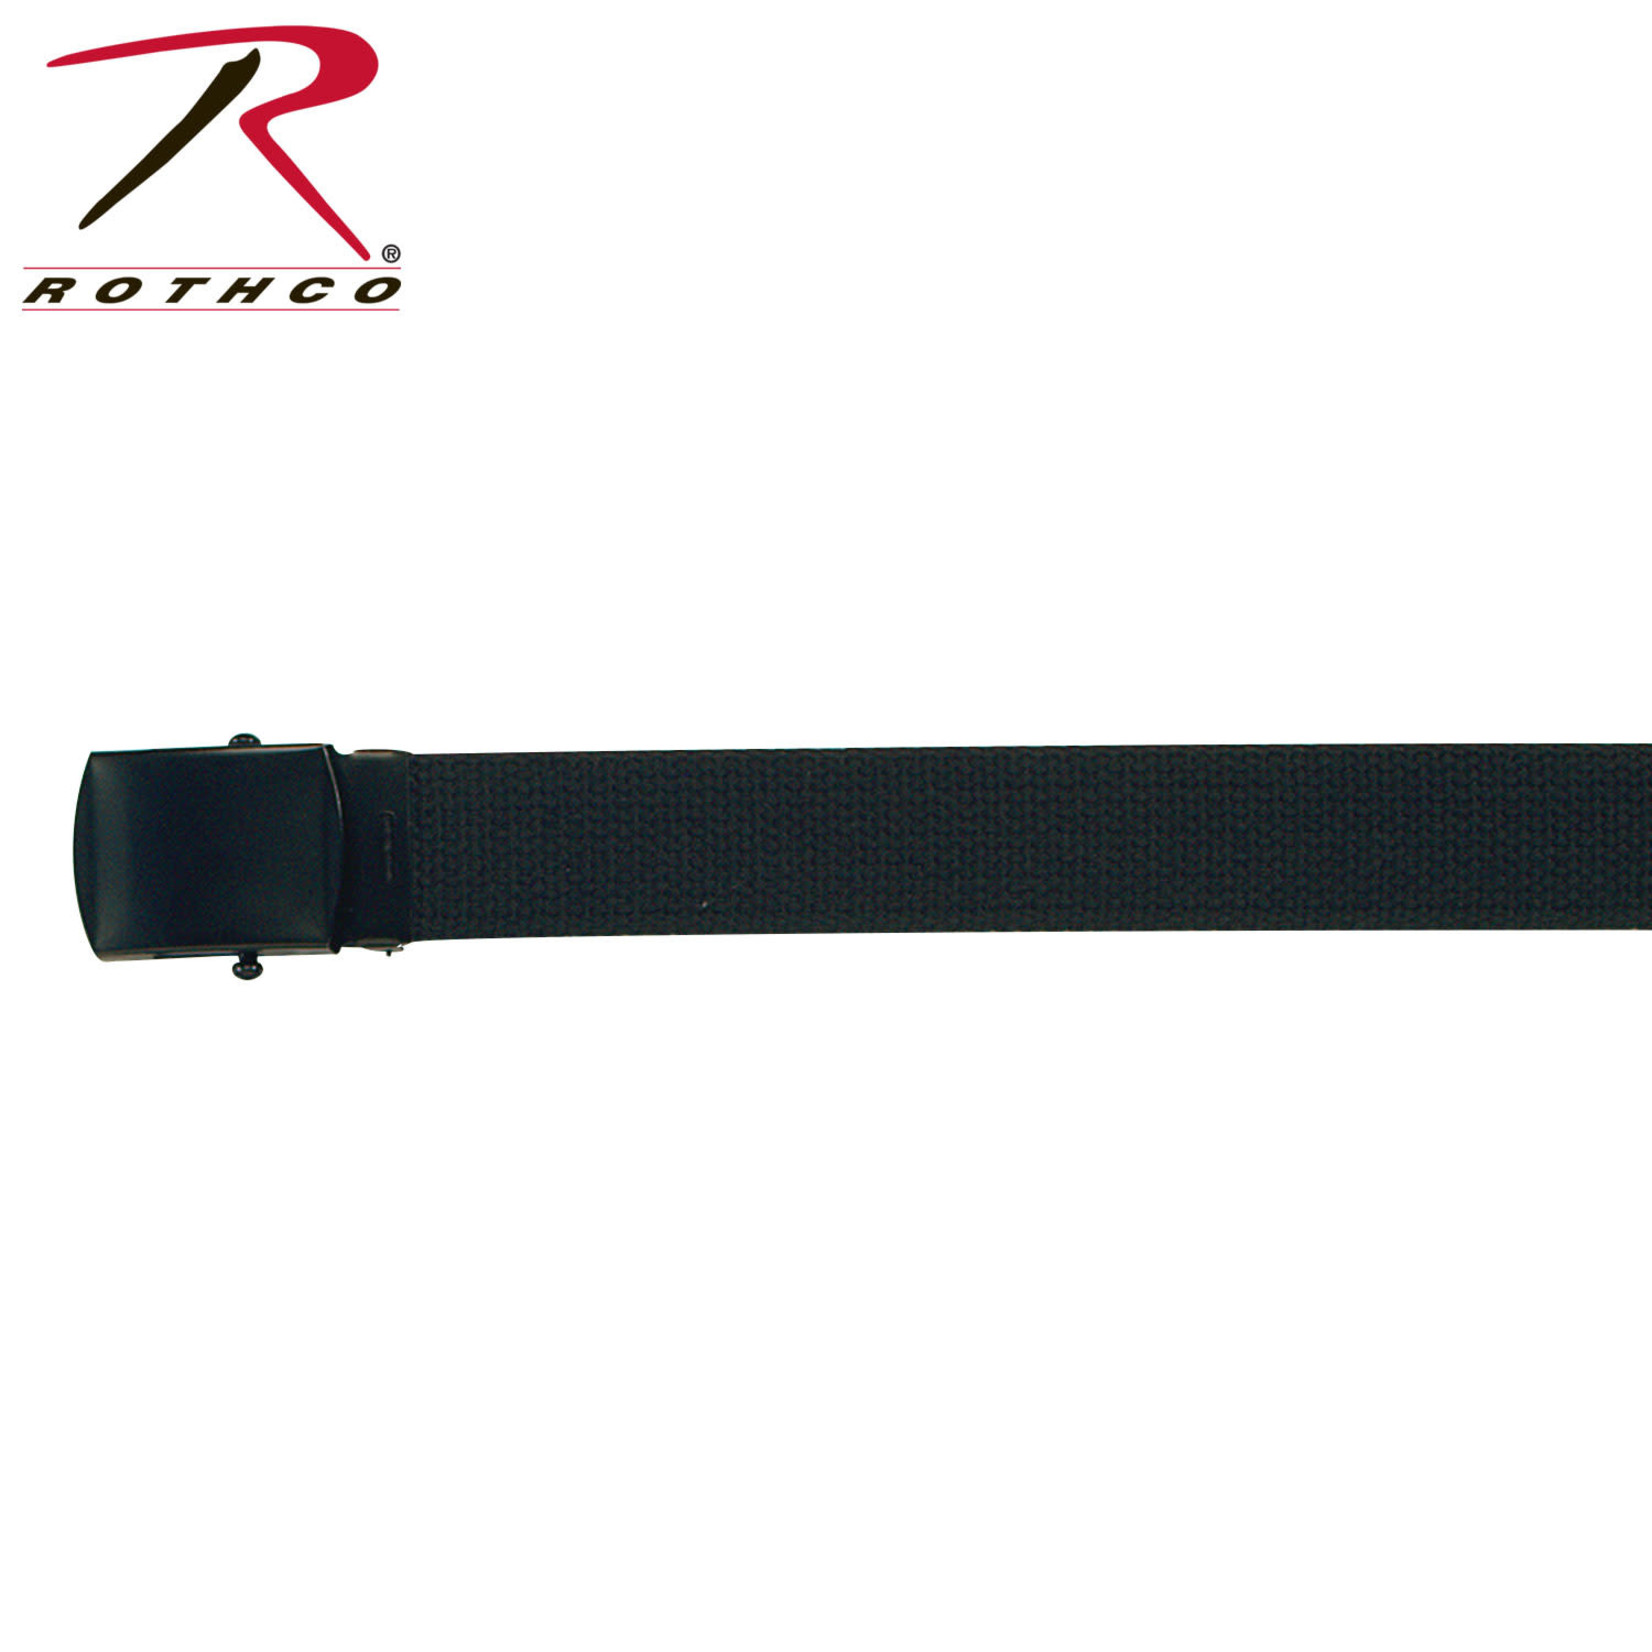 Rothco Rothco Solid Color Web Belt - 44"